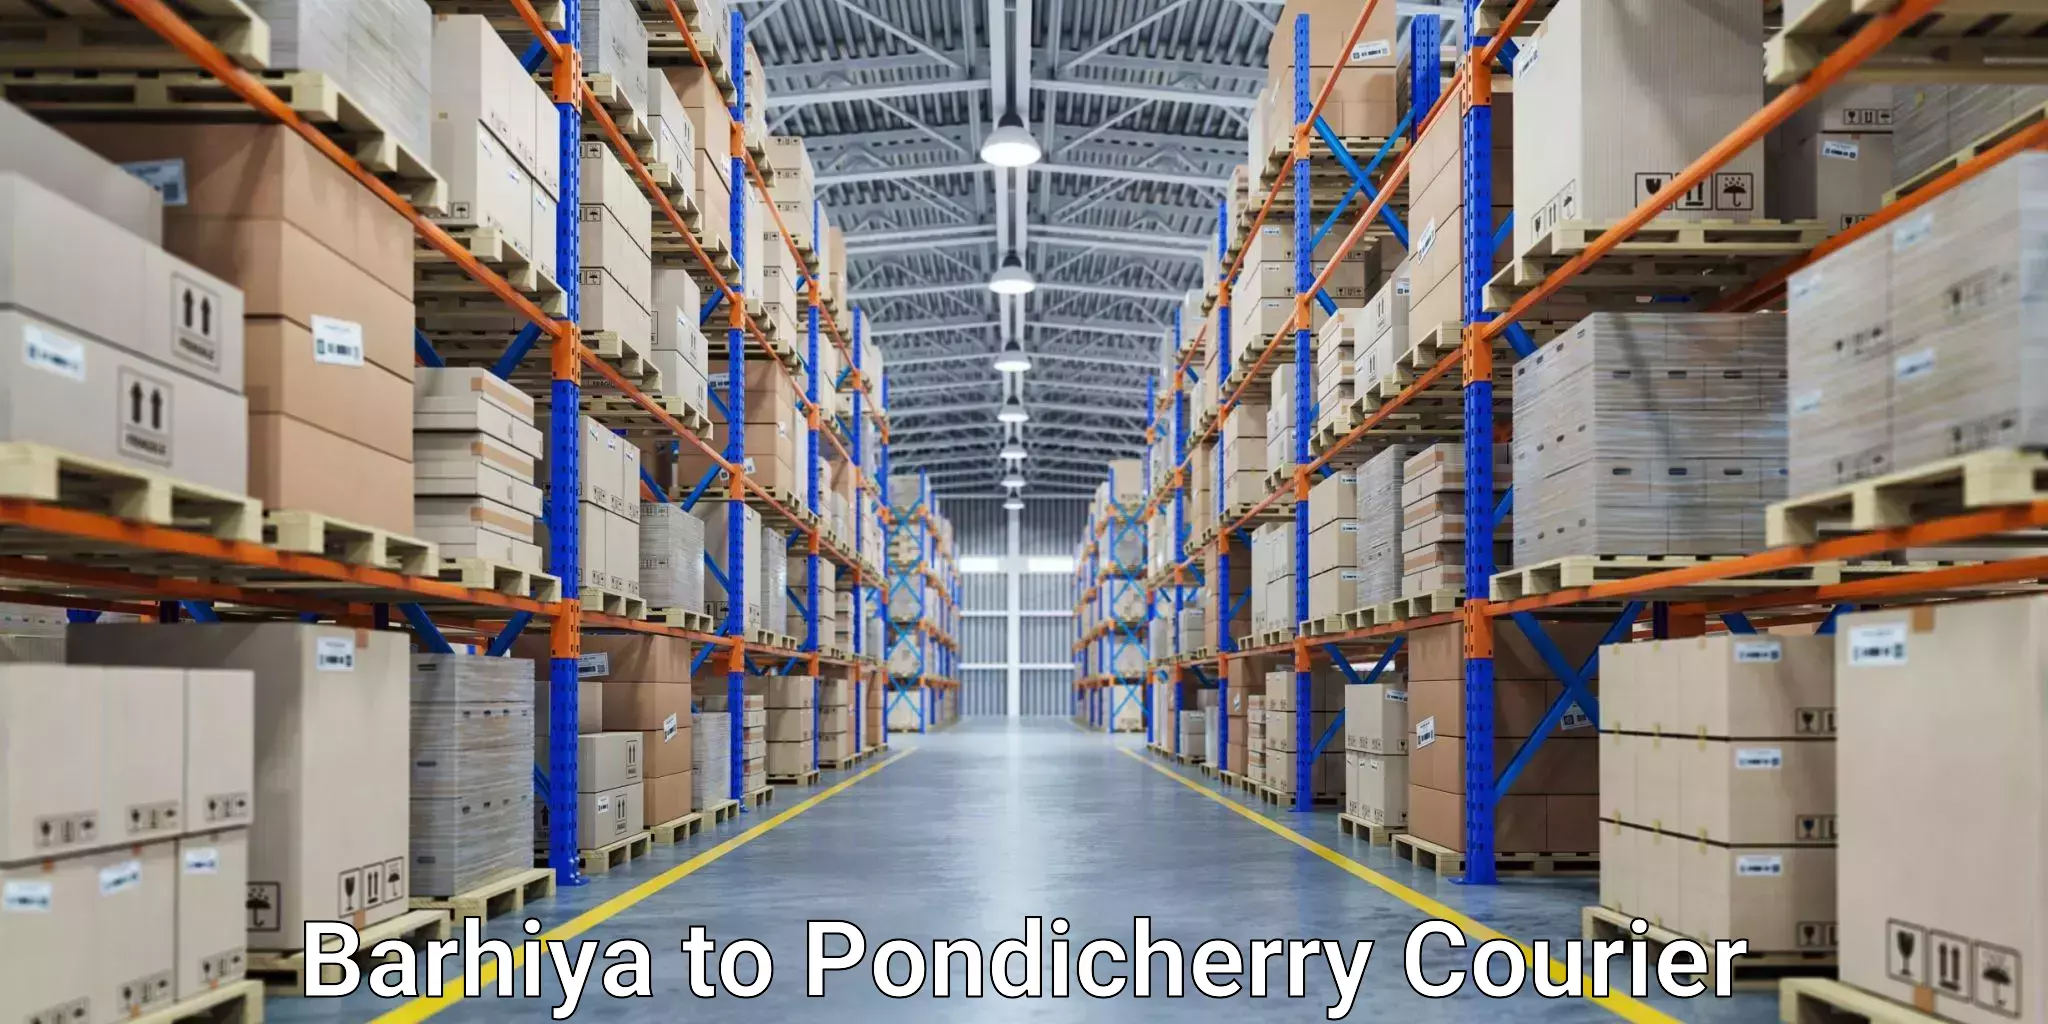 Courier service comparison Barhiya to Pondicherry